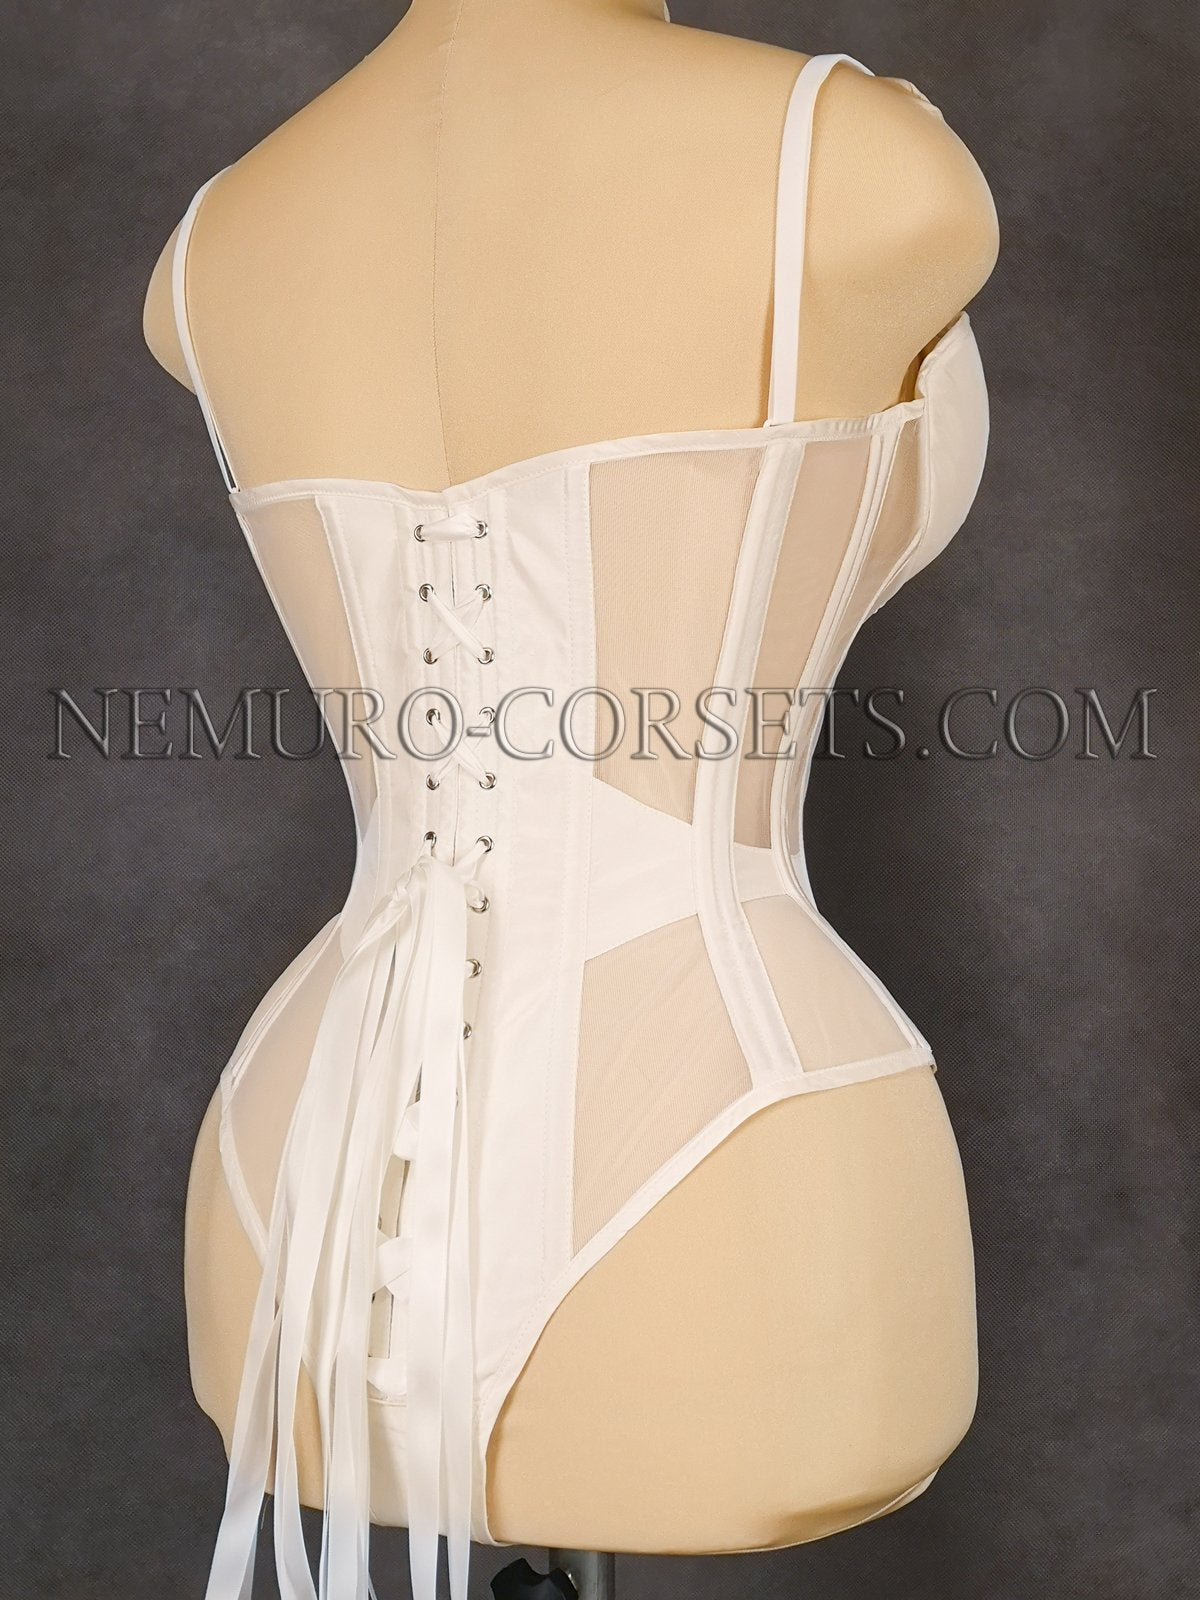 https://nemuro-corsets.com/cdn/shop/products/Img_20201121_185506_1024x1024@2x.jpg?v=1610511592